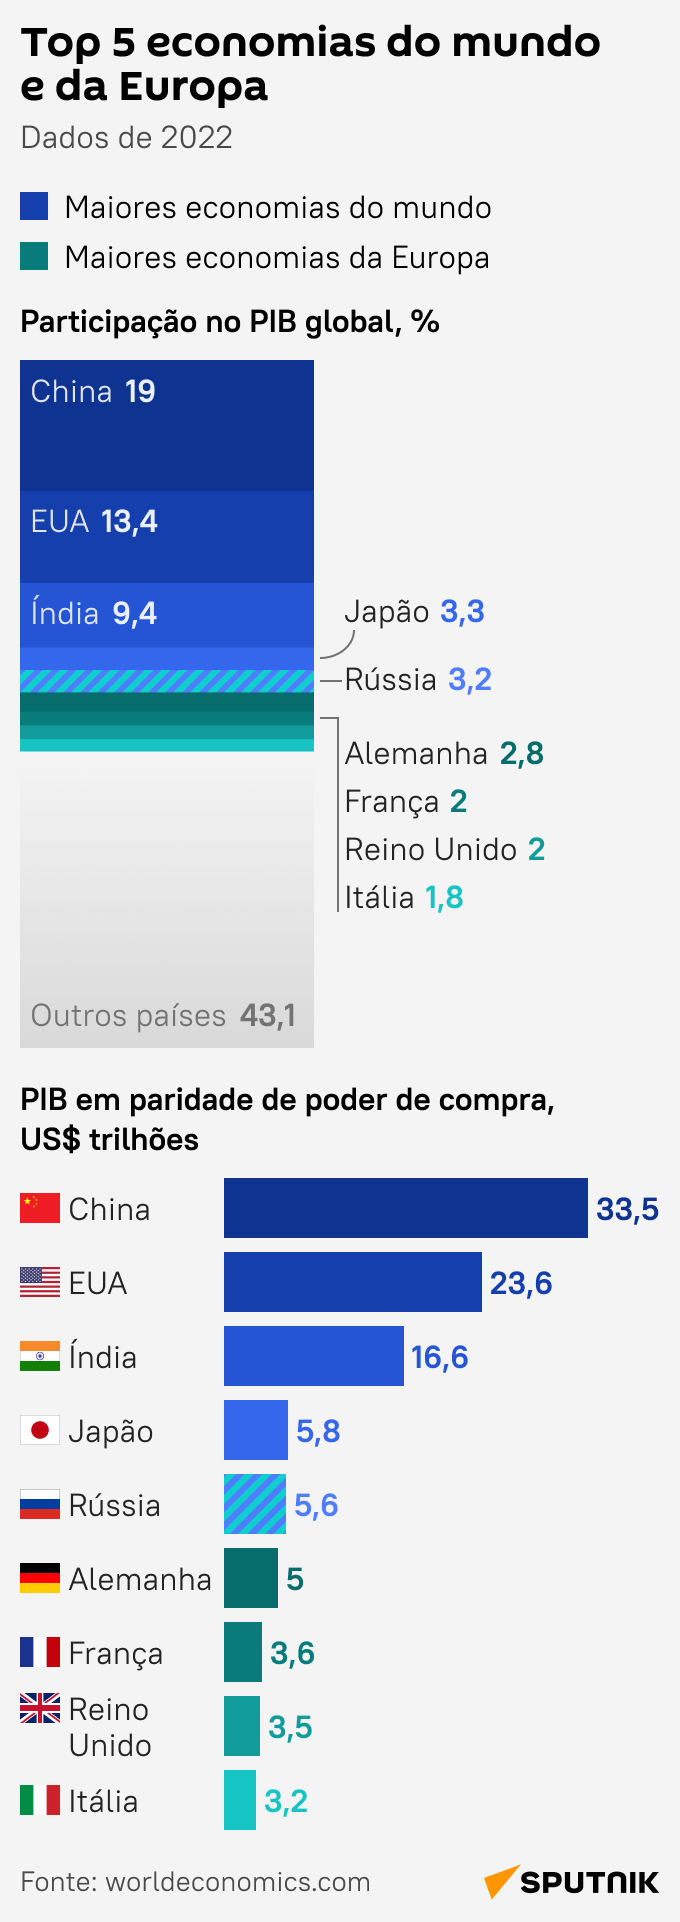 Com Rússia, confira Top 5 economias do mundo e da Europa - Sputnik Brasil